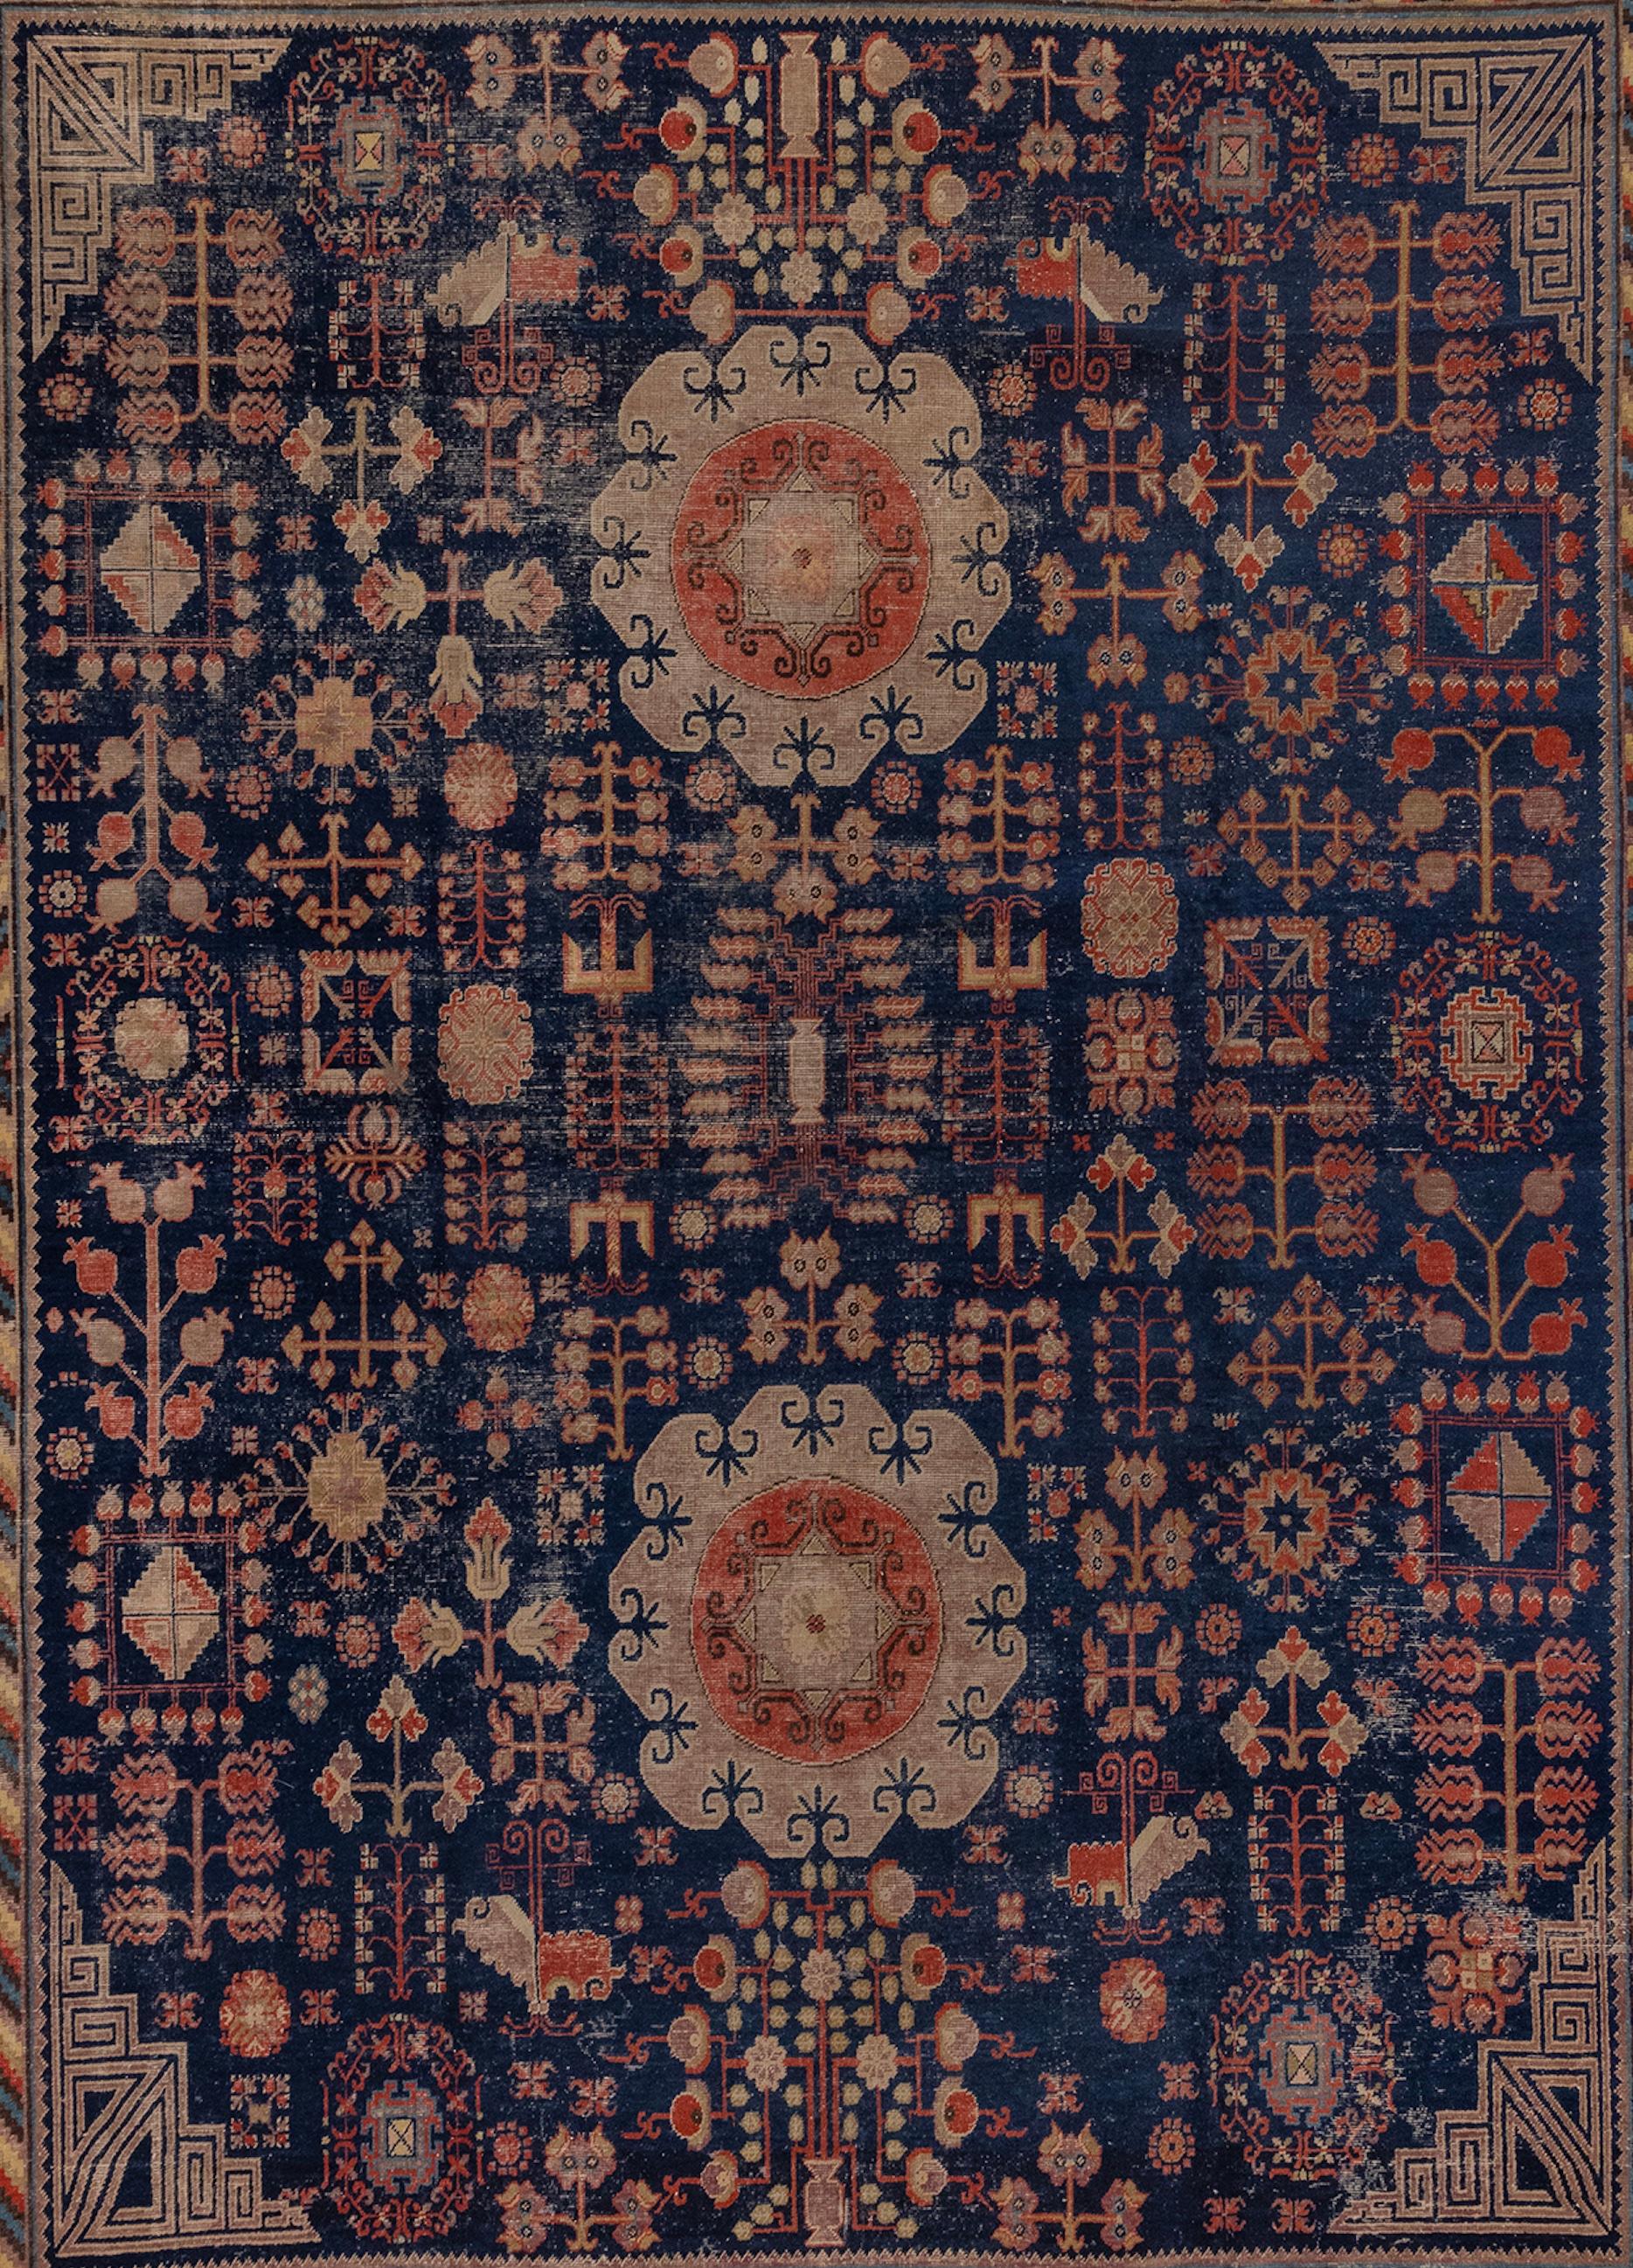 Schöner Khotan-Teppich mit einzigartigen Medaillons und Lebensbaum-Muster. Der Rand ist mit bunten Streifen und Granatapfelsymbolen verziert. Dies ist ein großer Teppich, selten für diesen Stil von Khotan.